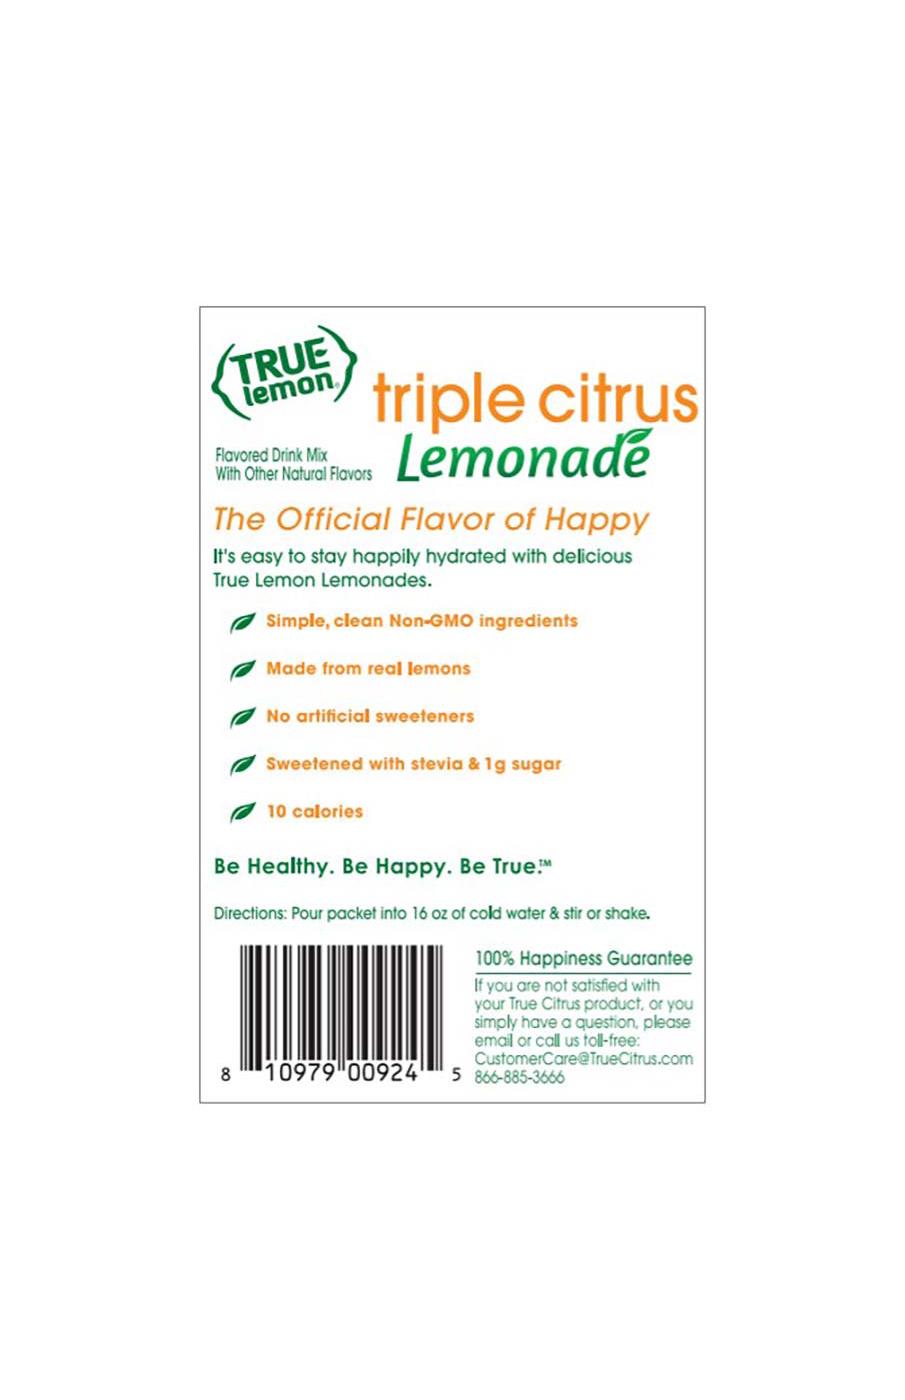 True Lemon Drink Mix - Triple Citrus Lemonade; image 2 of 2